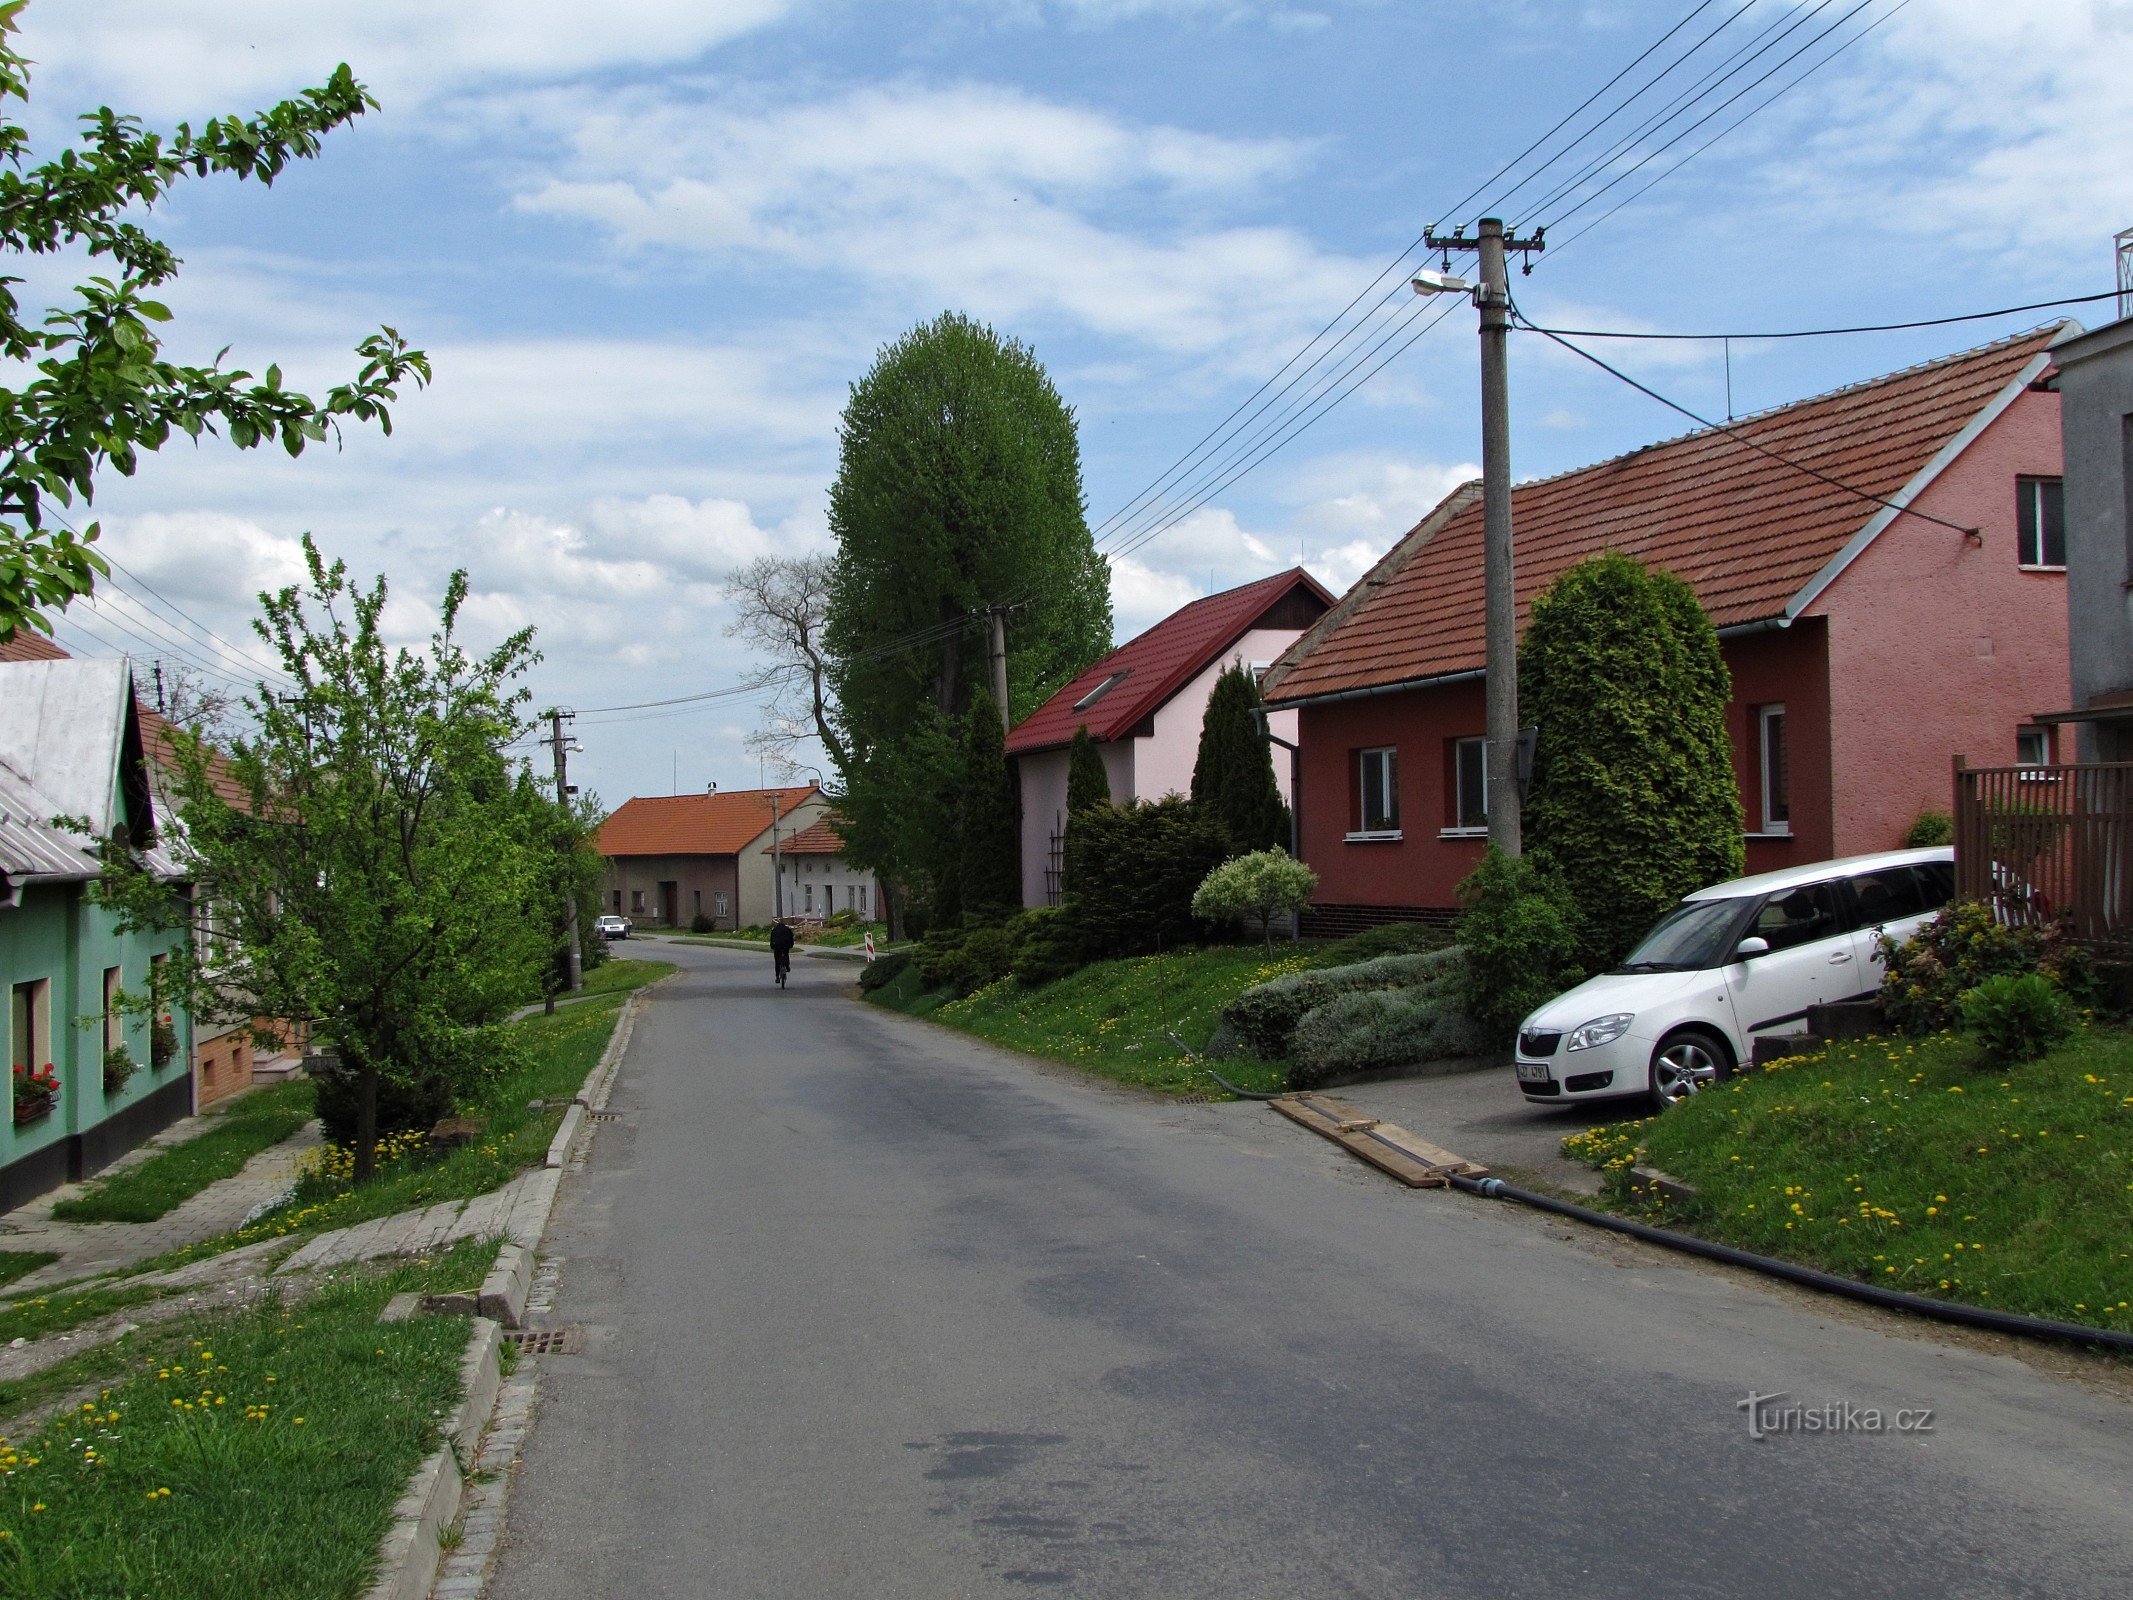 Nová Dědina - κάτι για το χωριό